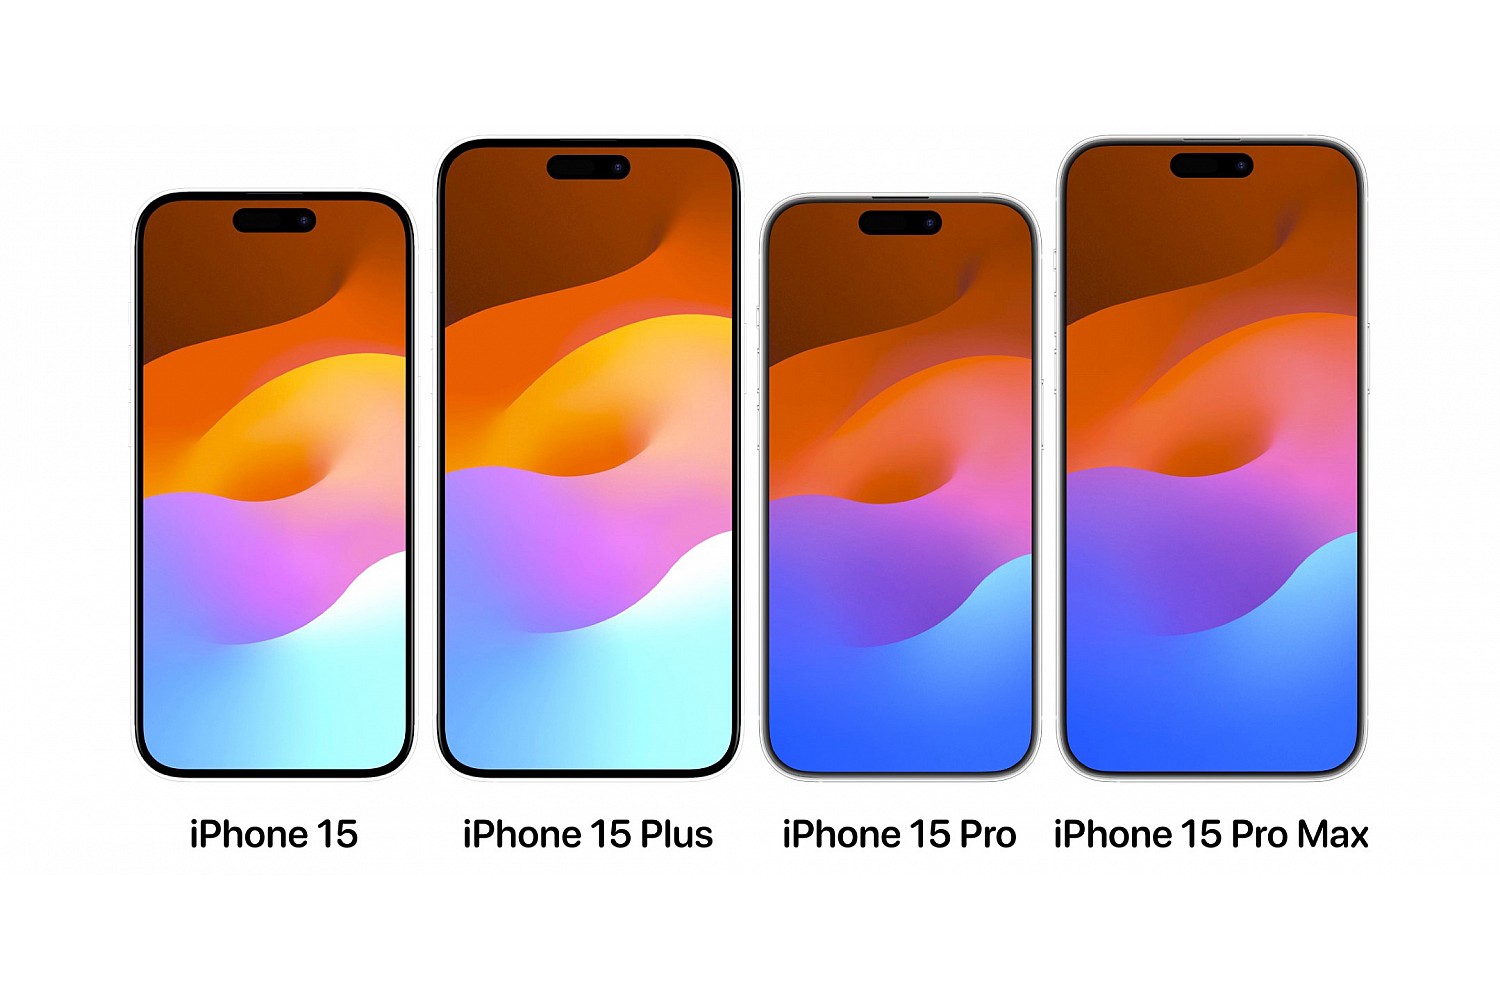 Вся линейка iPhone 15 включает модели iPhone 15, iPhone 15 Plus, iPhone 15 Pro и iPhone 15 Pro Max, каждая из которых имеет свои уникальные характеристики.